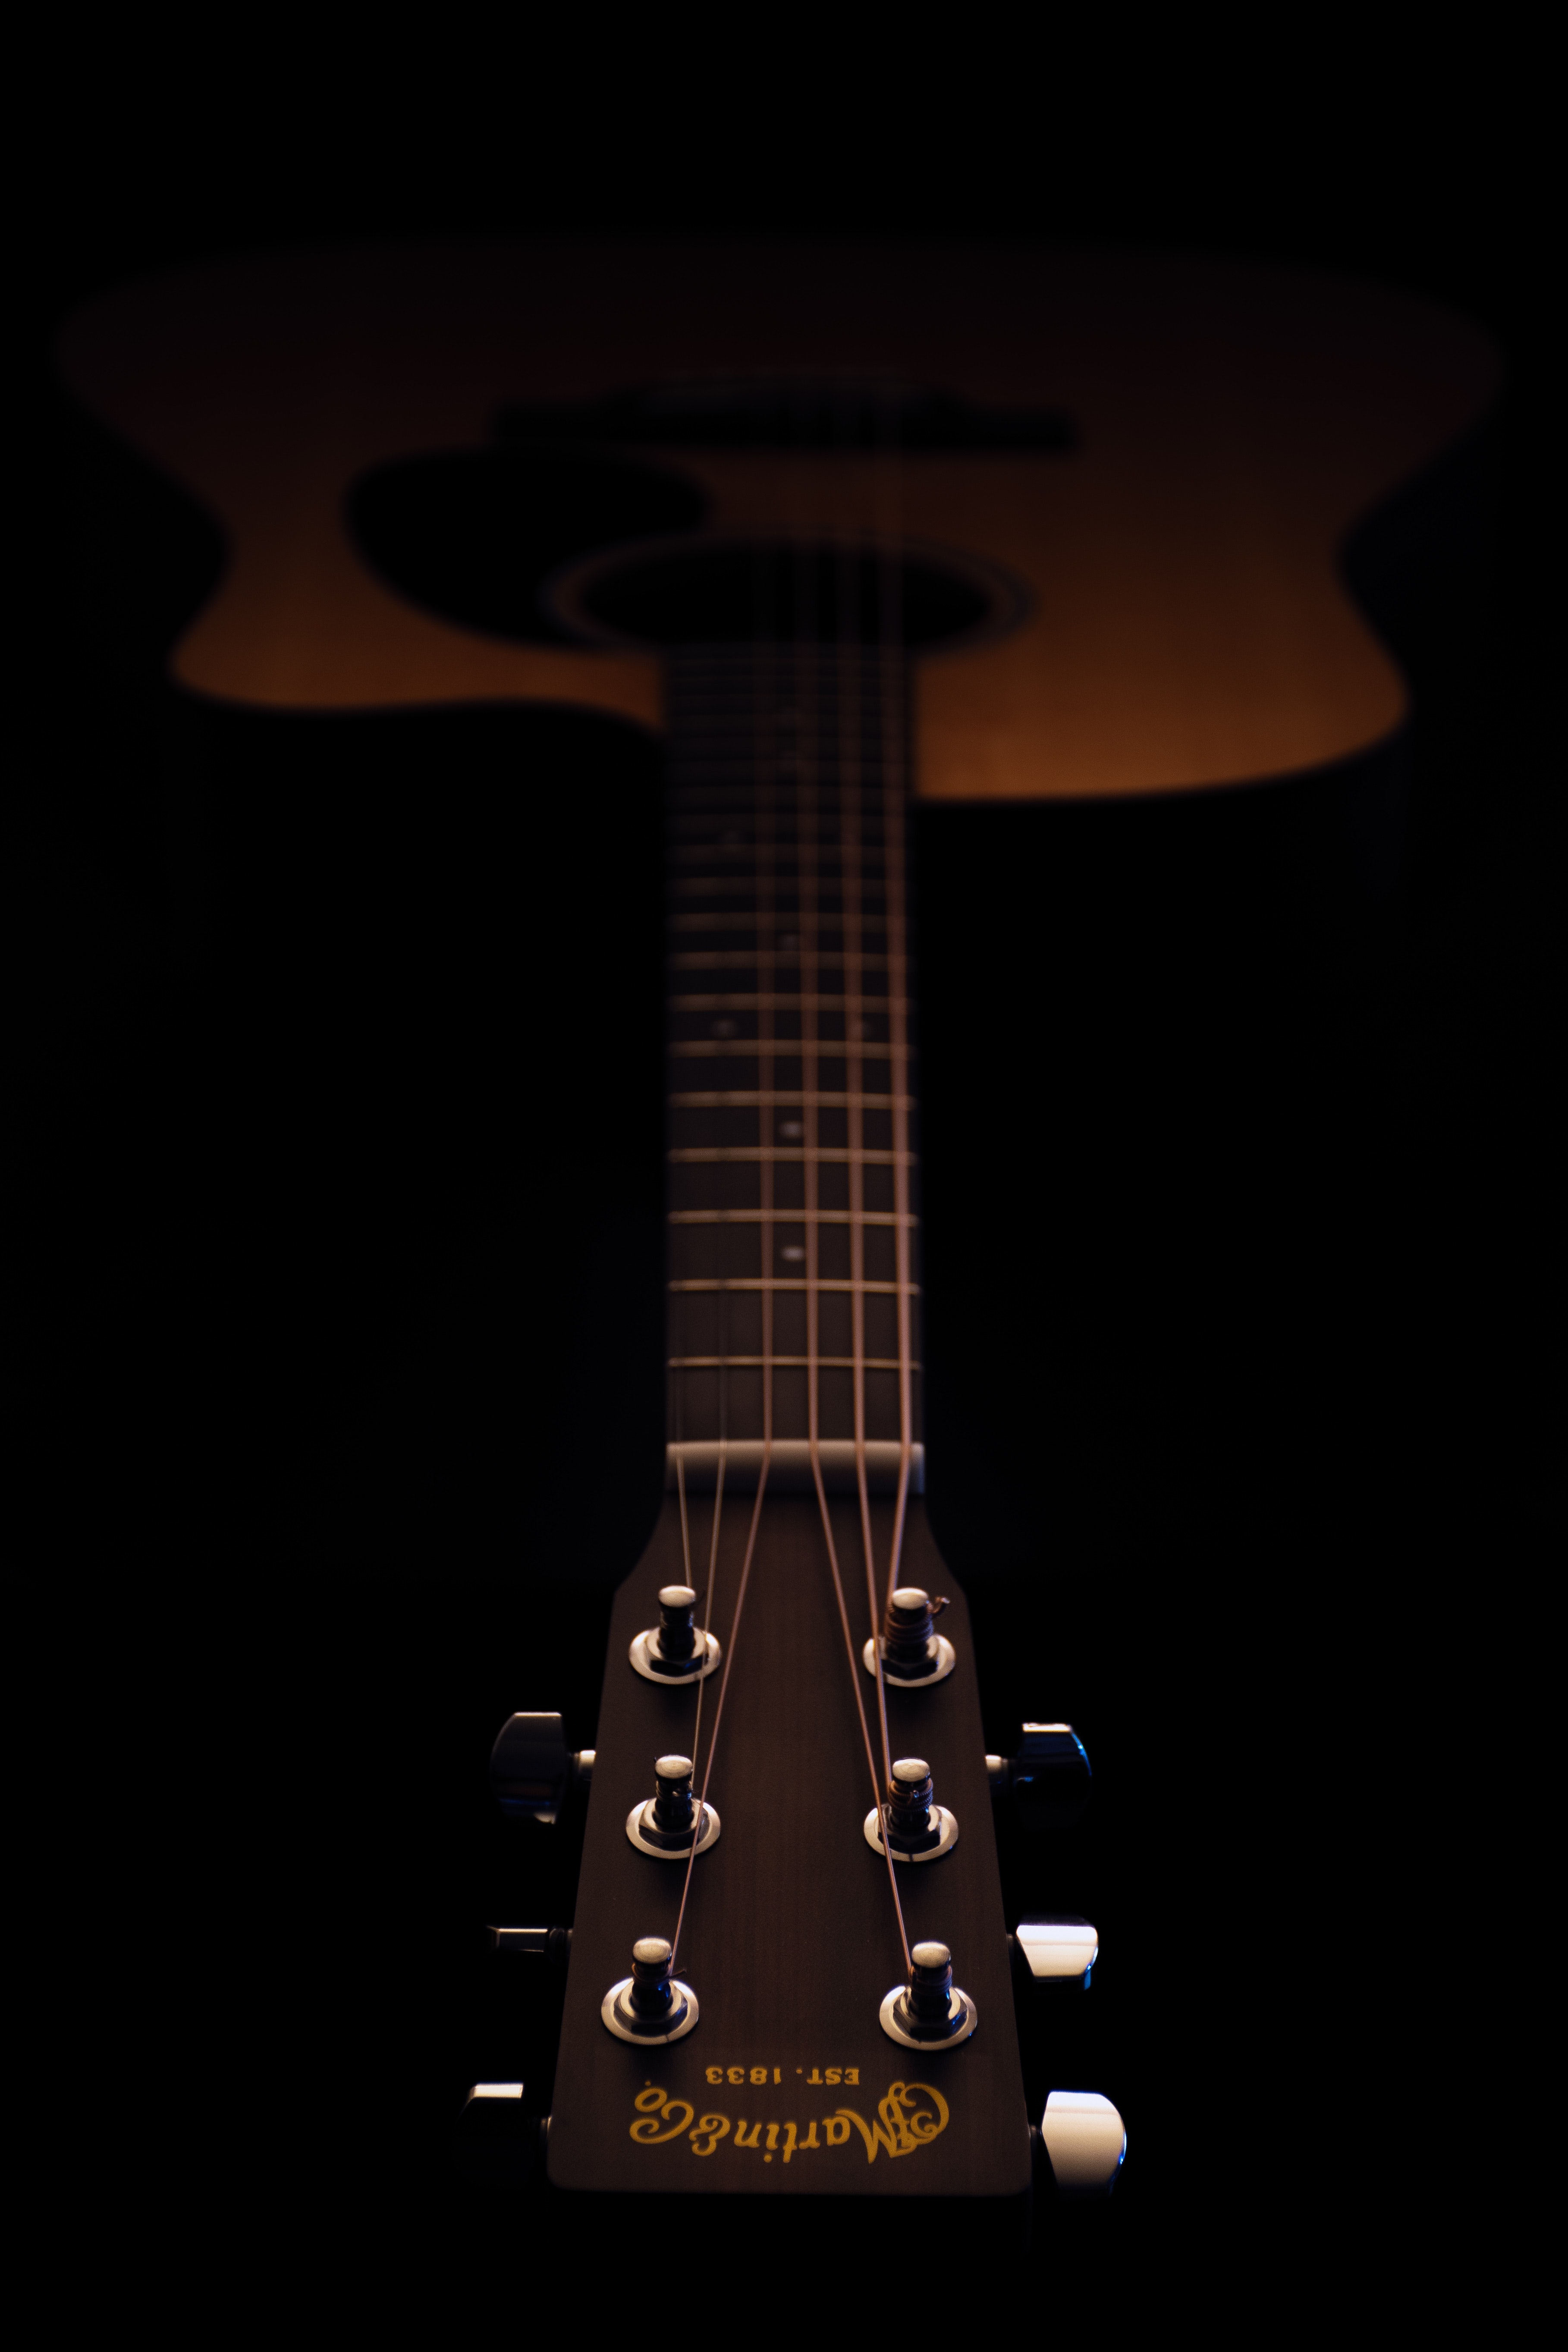 dark, acoustics, strings, guitar Hd 1080p Mobile